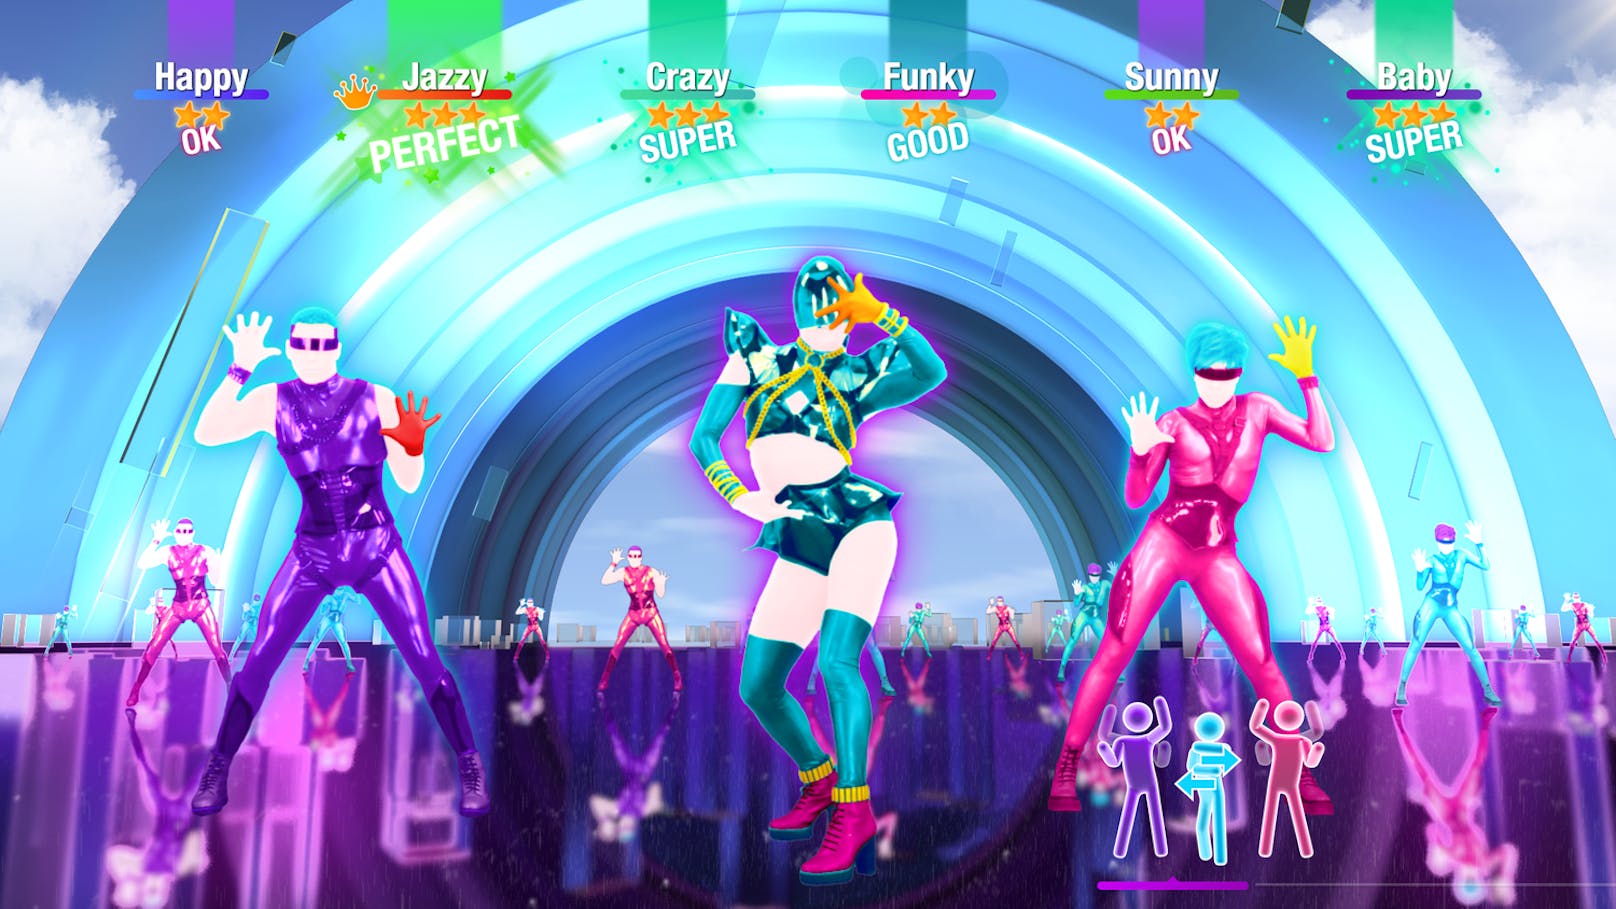 Grafisch hat sich im Vergleich zum Vorgänger bei "Just Dance 2021" so gut wie gar nichts geändert. Wieder geht es am Bildschirm flüssig, bunt und in knalligen Neon-Farben her.